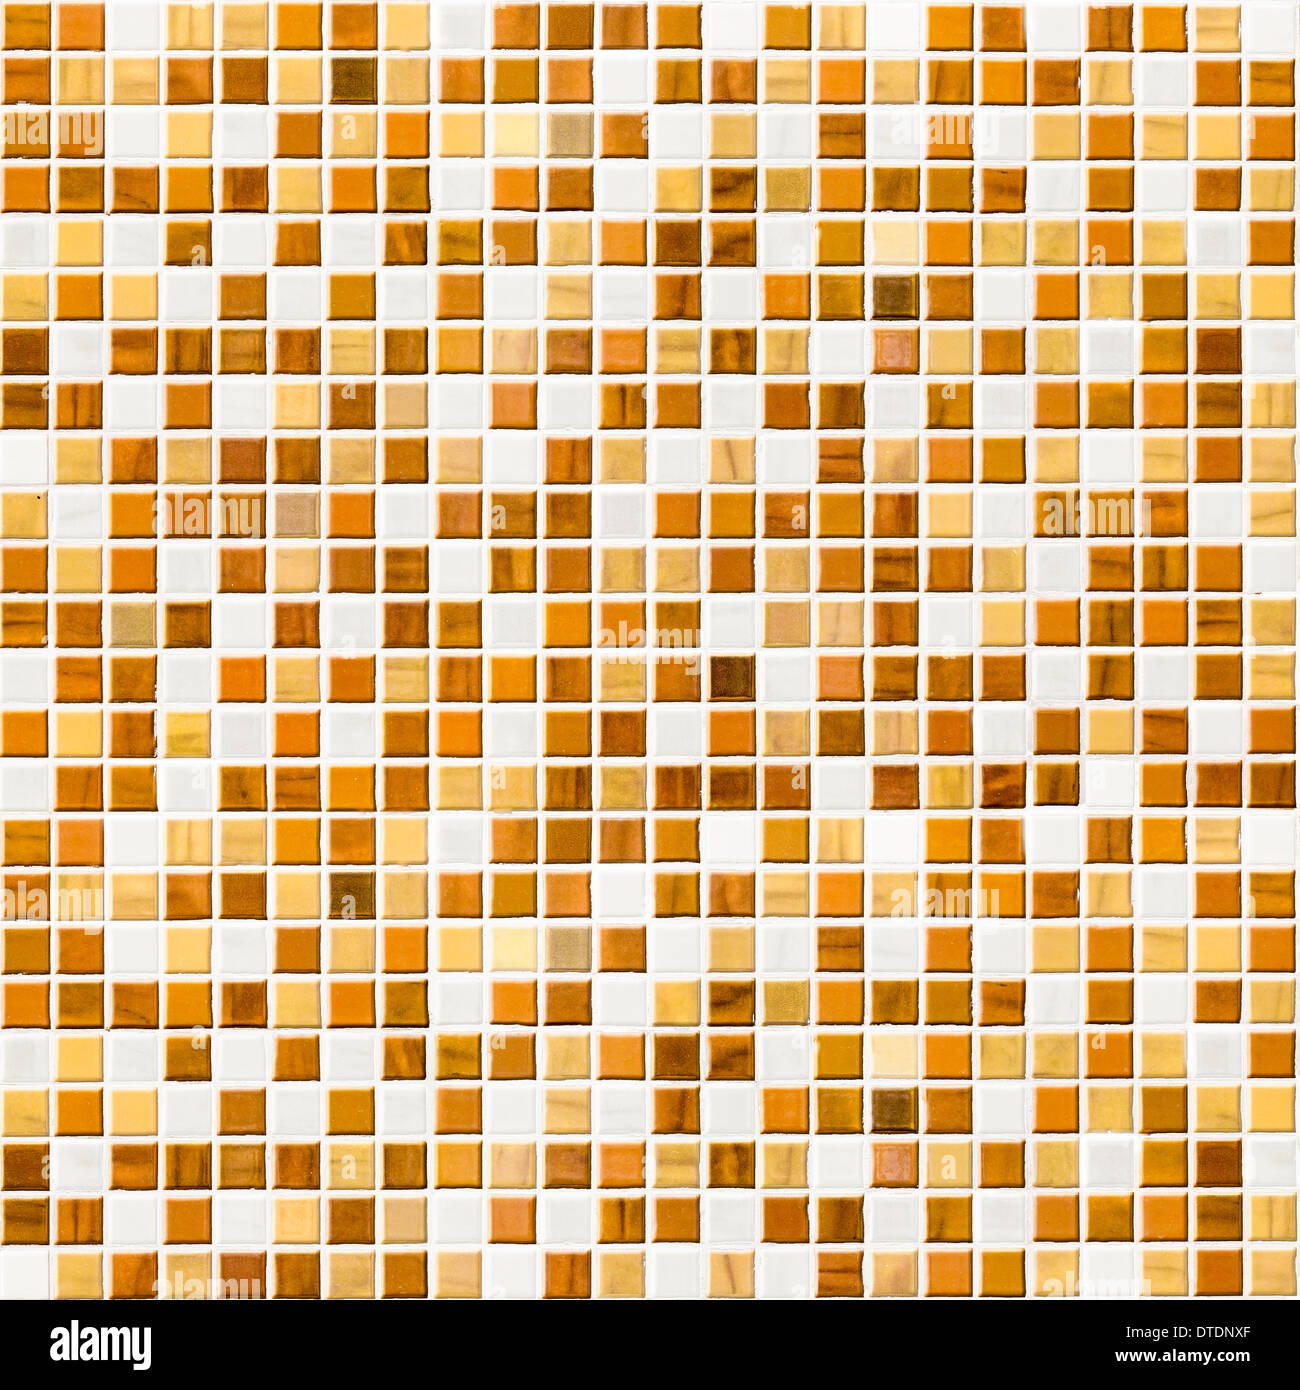 Mur de carreaux de mosaïque jaune Banque D'Images